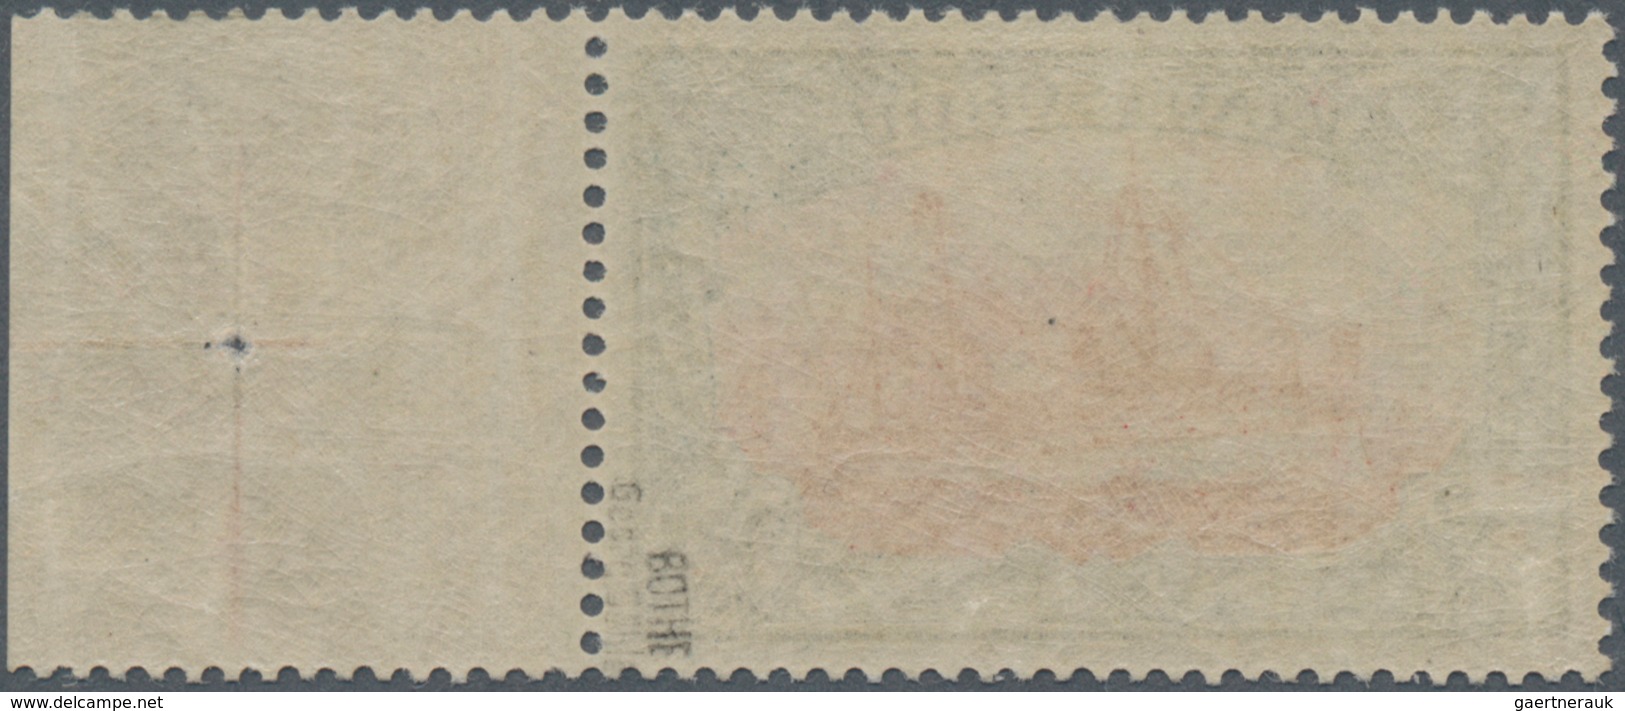 Deutsche Kolonien - Kiautschou: 1905, 2½ Dollar Kaiseryacht, Grünschwarz/dunkelkarmin, 26:17 Zähnung - Kiauchau